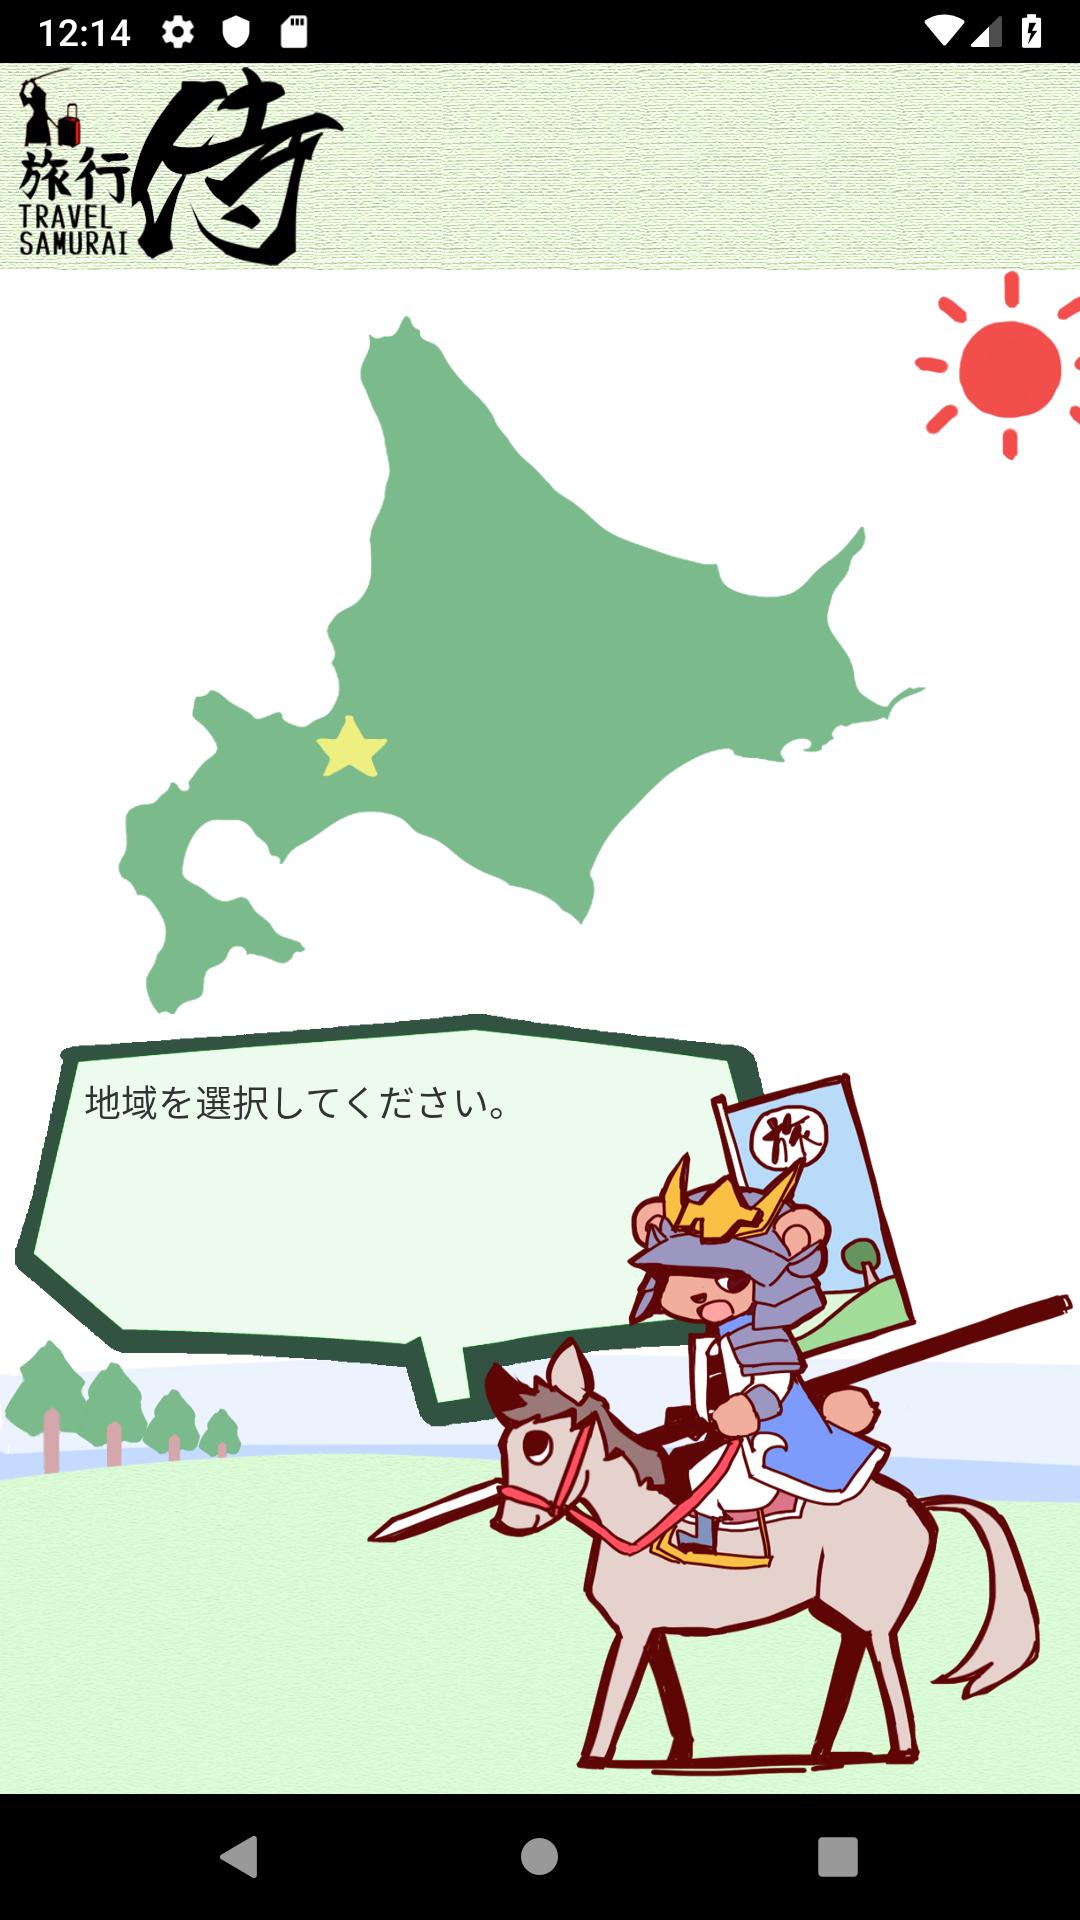 旅行侍 Travel Samurai For Android Apk Download